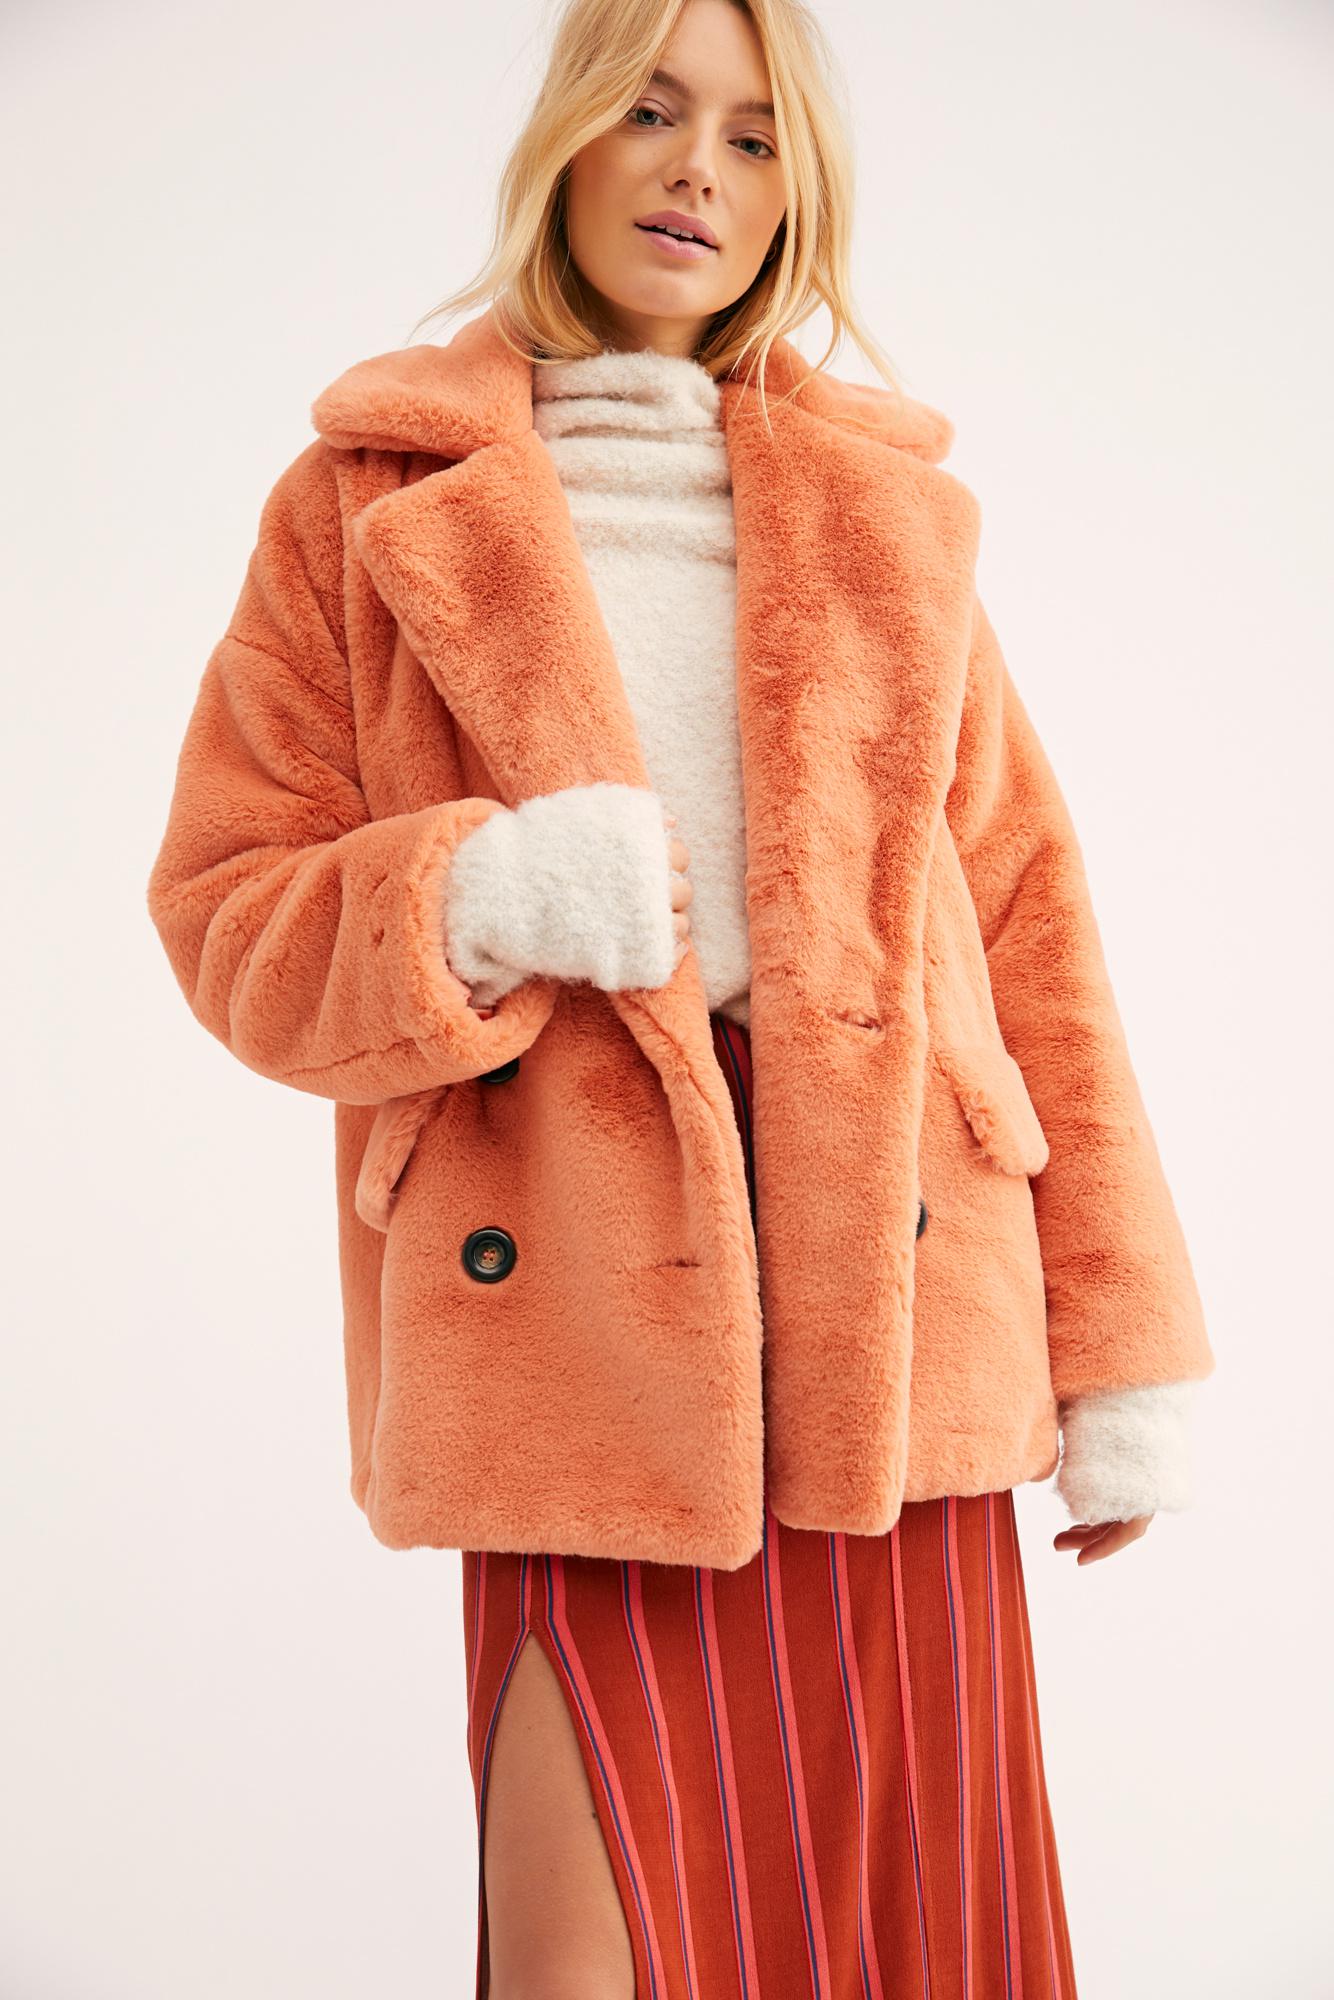 Free People Solid Kate Faux Fur Coat in Orange - Lyst